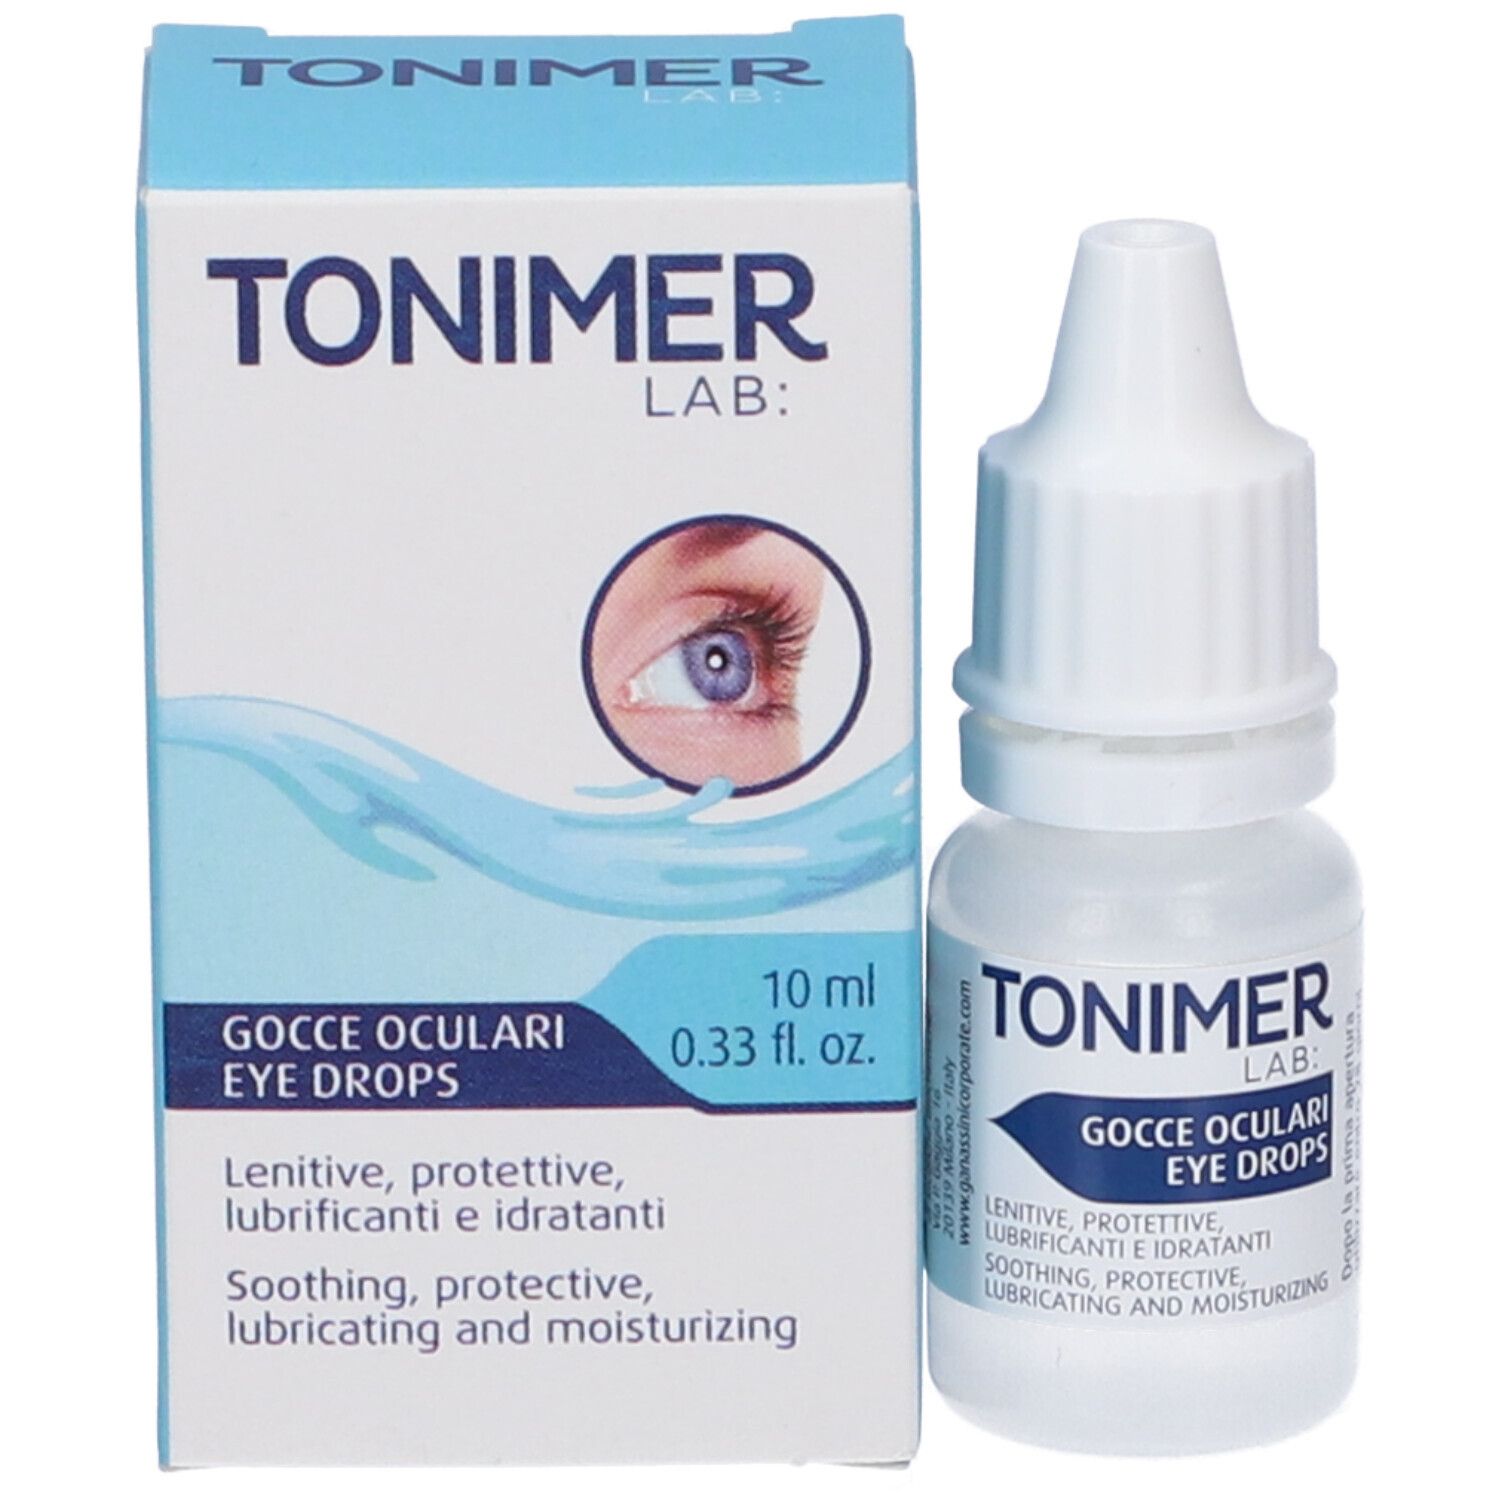 Tonimer Lab: Gocce Oculari